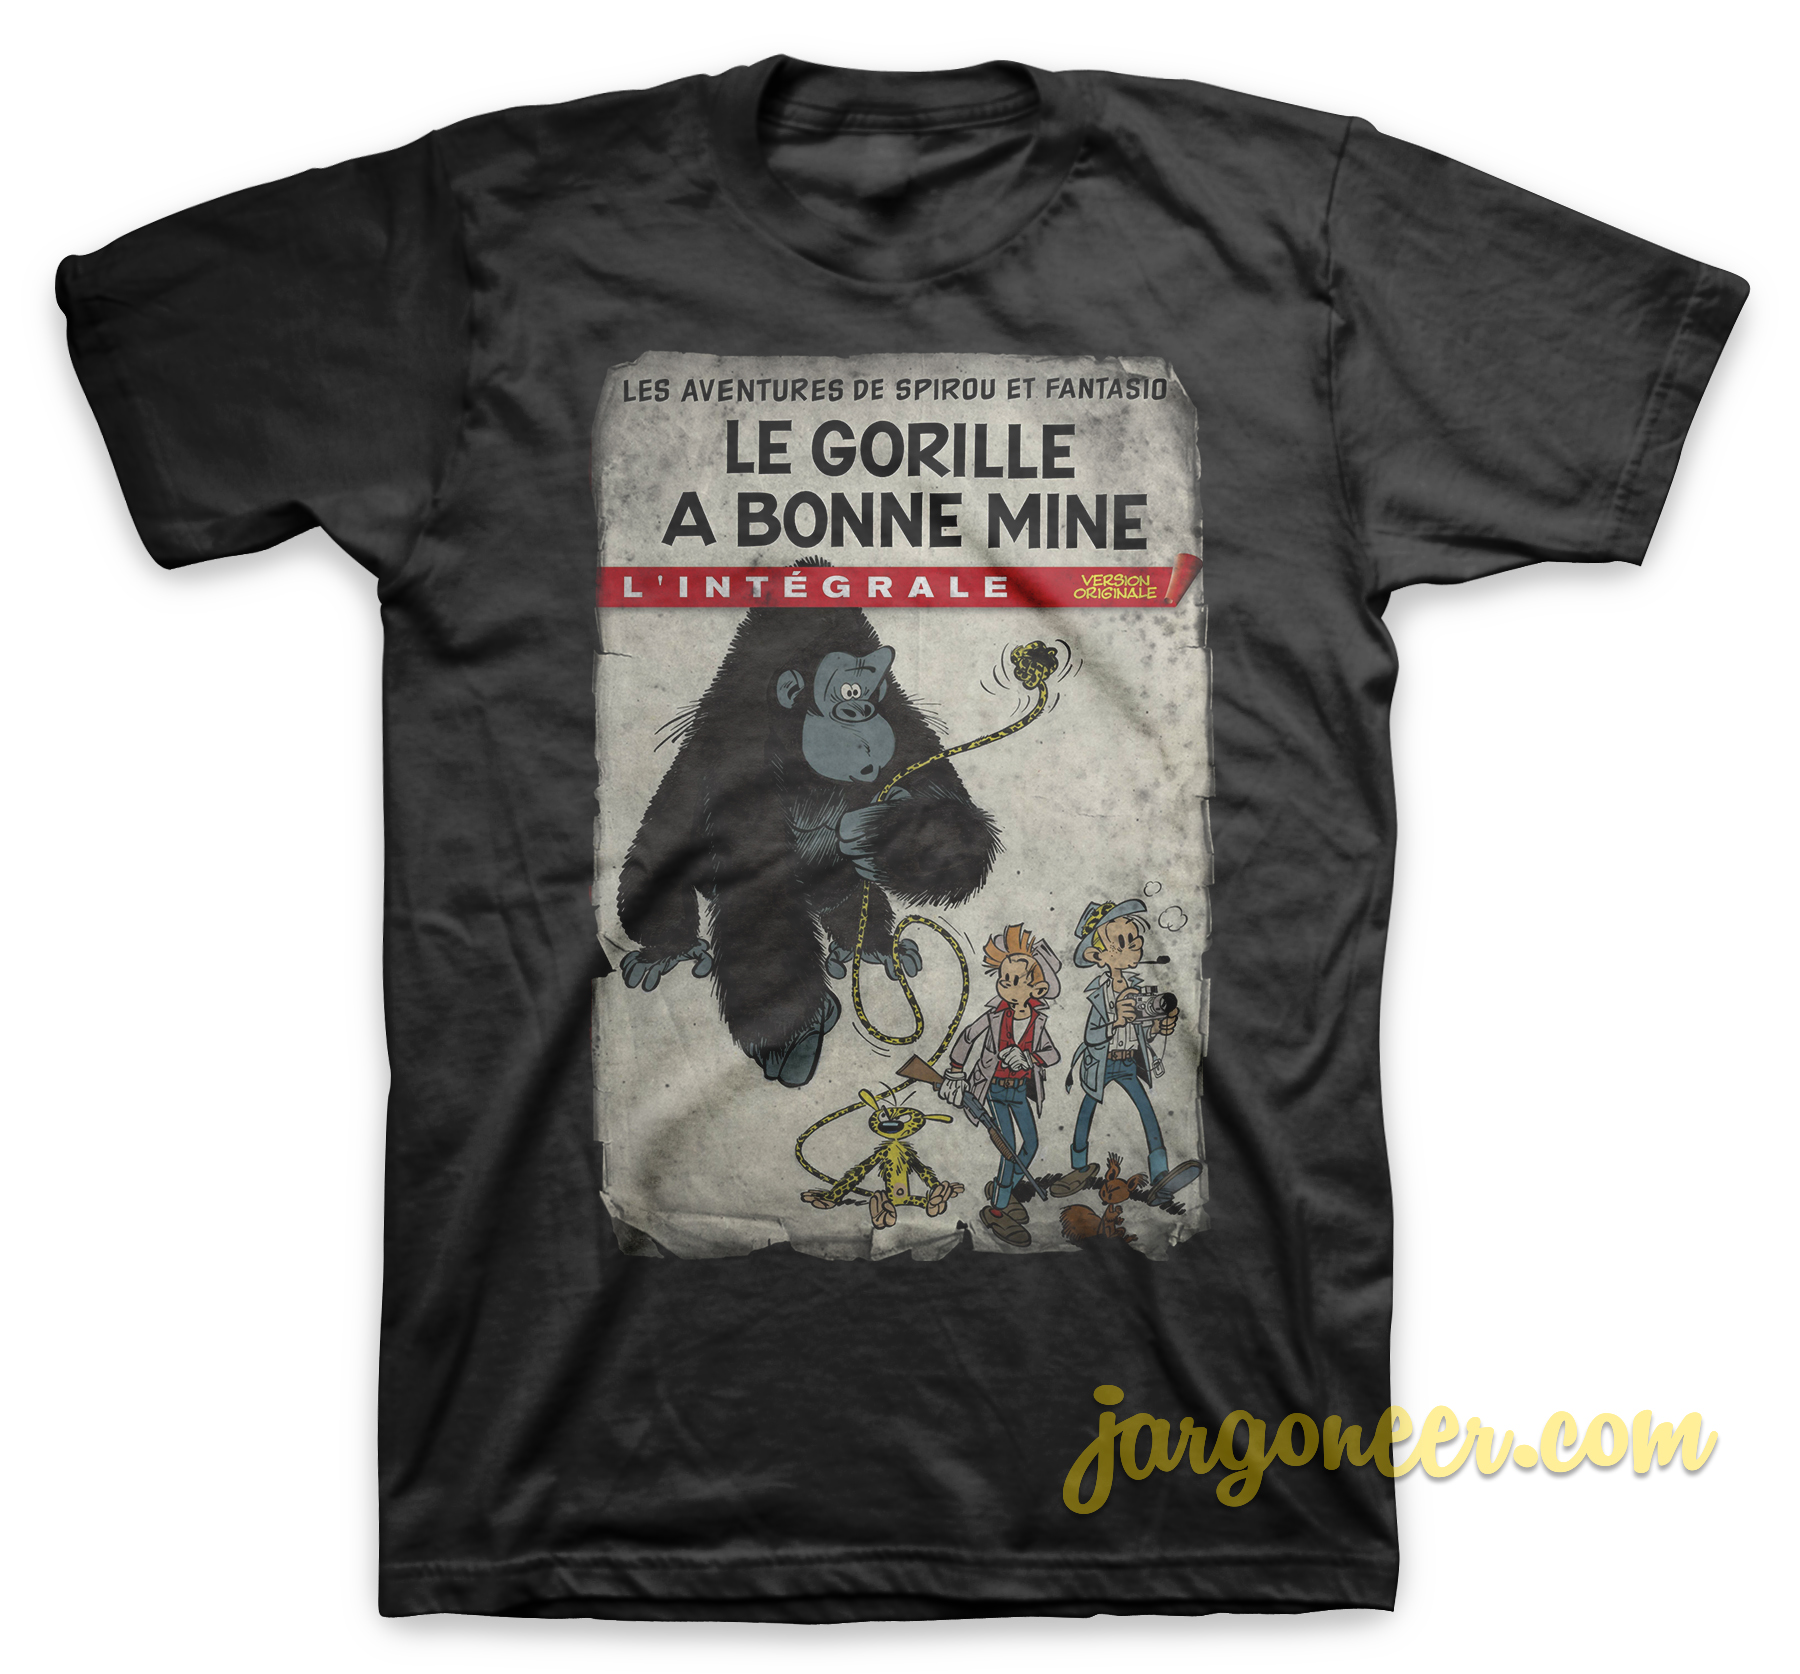 Spirou Gorilla Looks Good Black T Shirt - Shop Unique Graphic Cool Shirt Designs